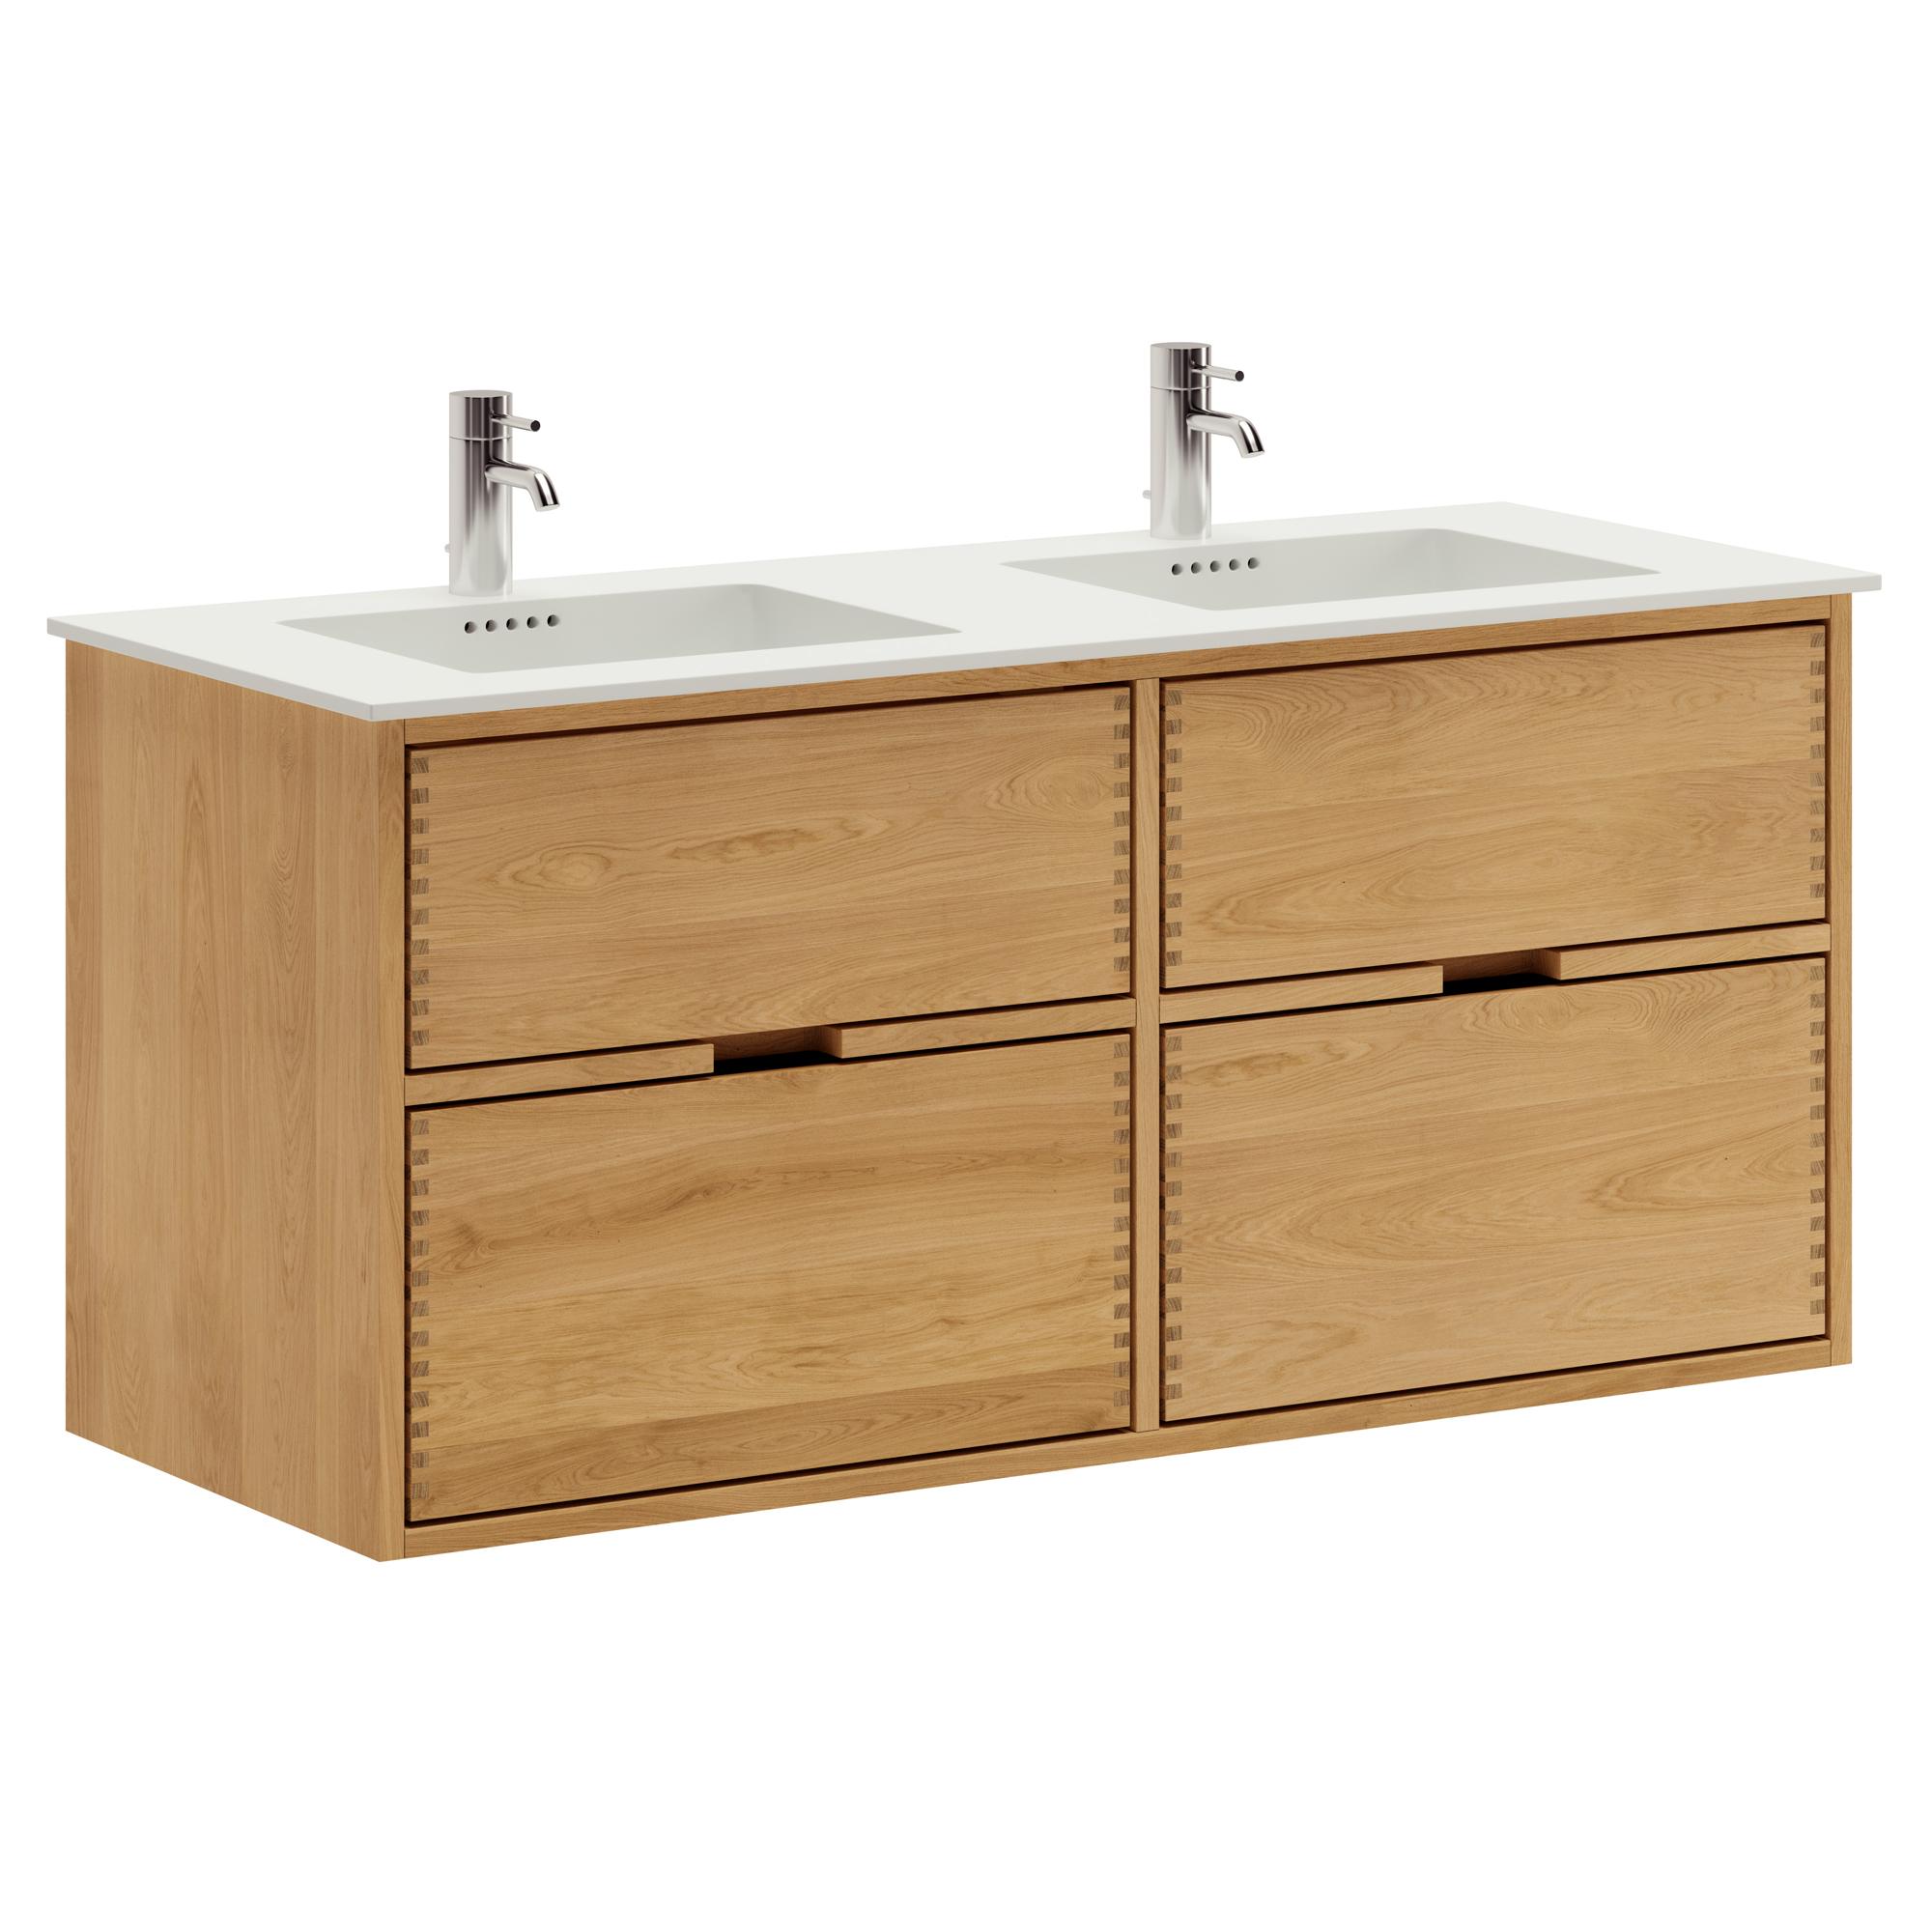 120 cm Just Wood Badezimmermöbel mit 4 Schubladen und Solid Surface-Waschbecken - Doppelwaschbecken